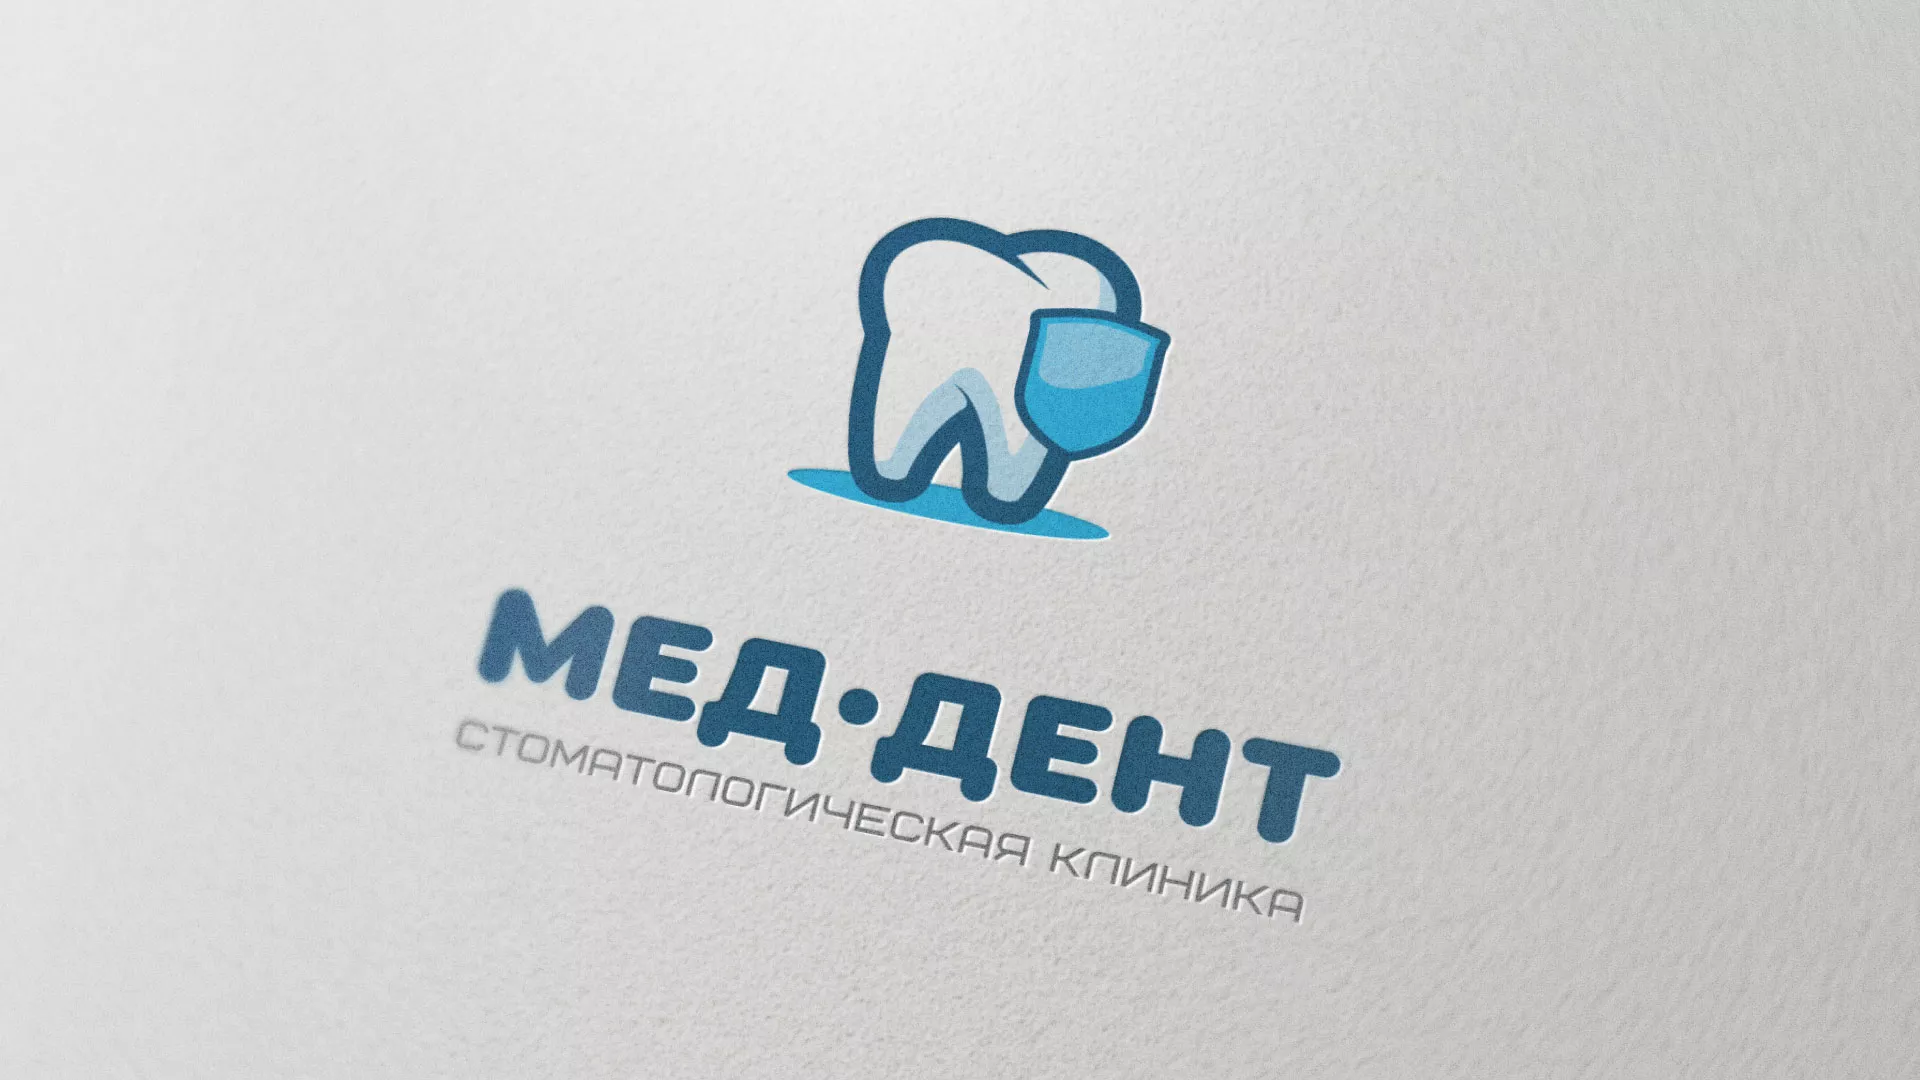 Разработка логотипа стоматологической клиники «МЕД-ДЕНТ» в Томске